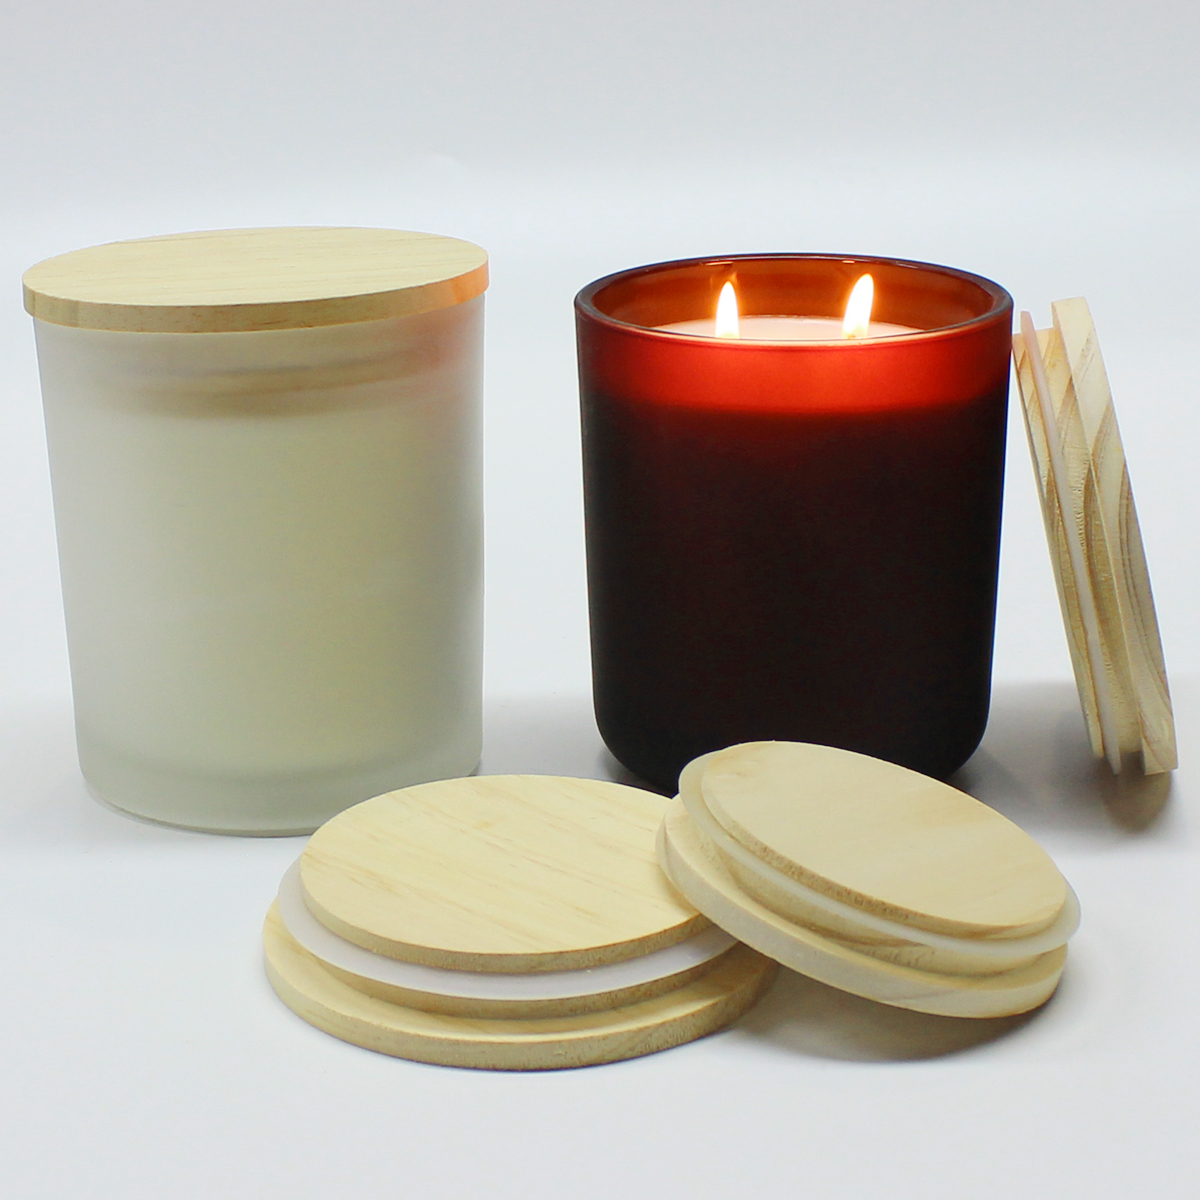 Оптовая продажа деревянных крышек круглой формы с разным размером для банок для свечей